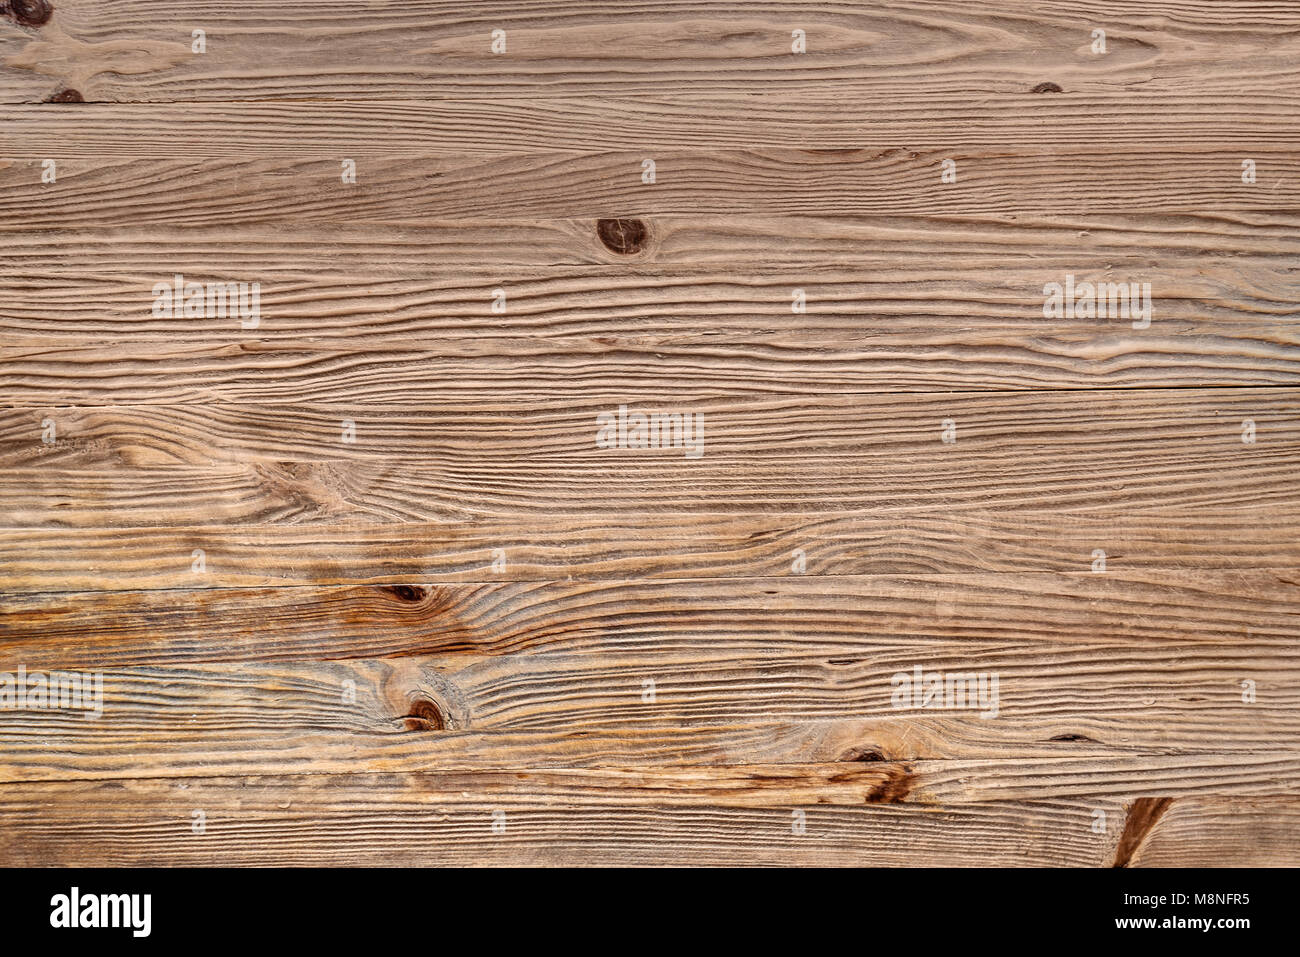 Tablones de madera natural de fondo horizontal Foto de stock